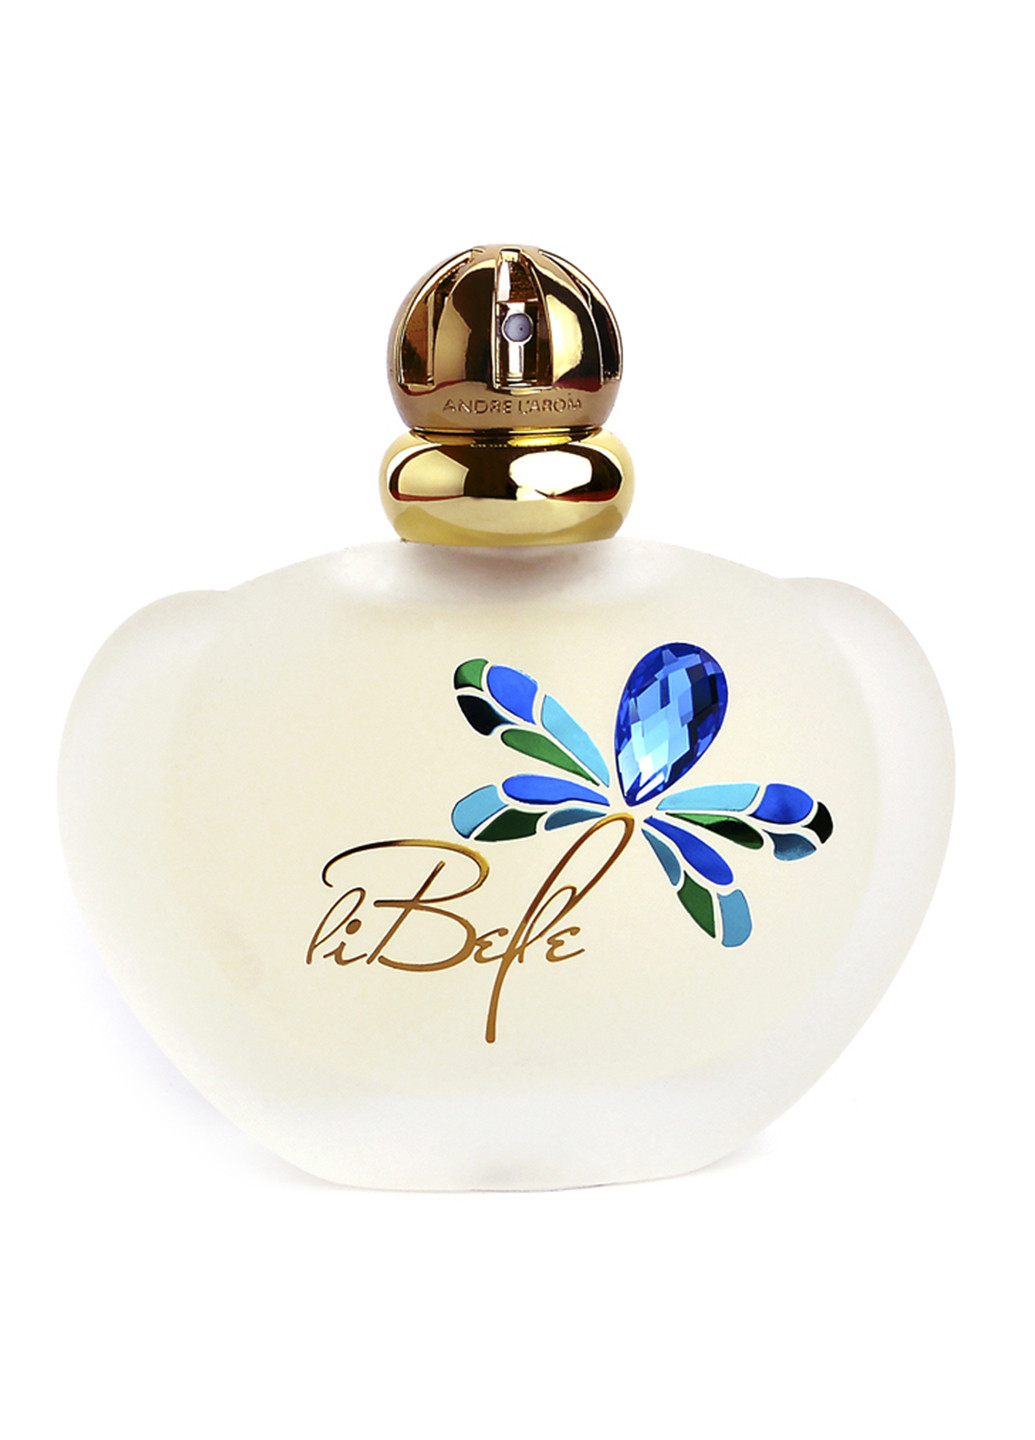 Li Belle парфюмированная вода 100 мл ANDRE L'AROM (88101687)